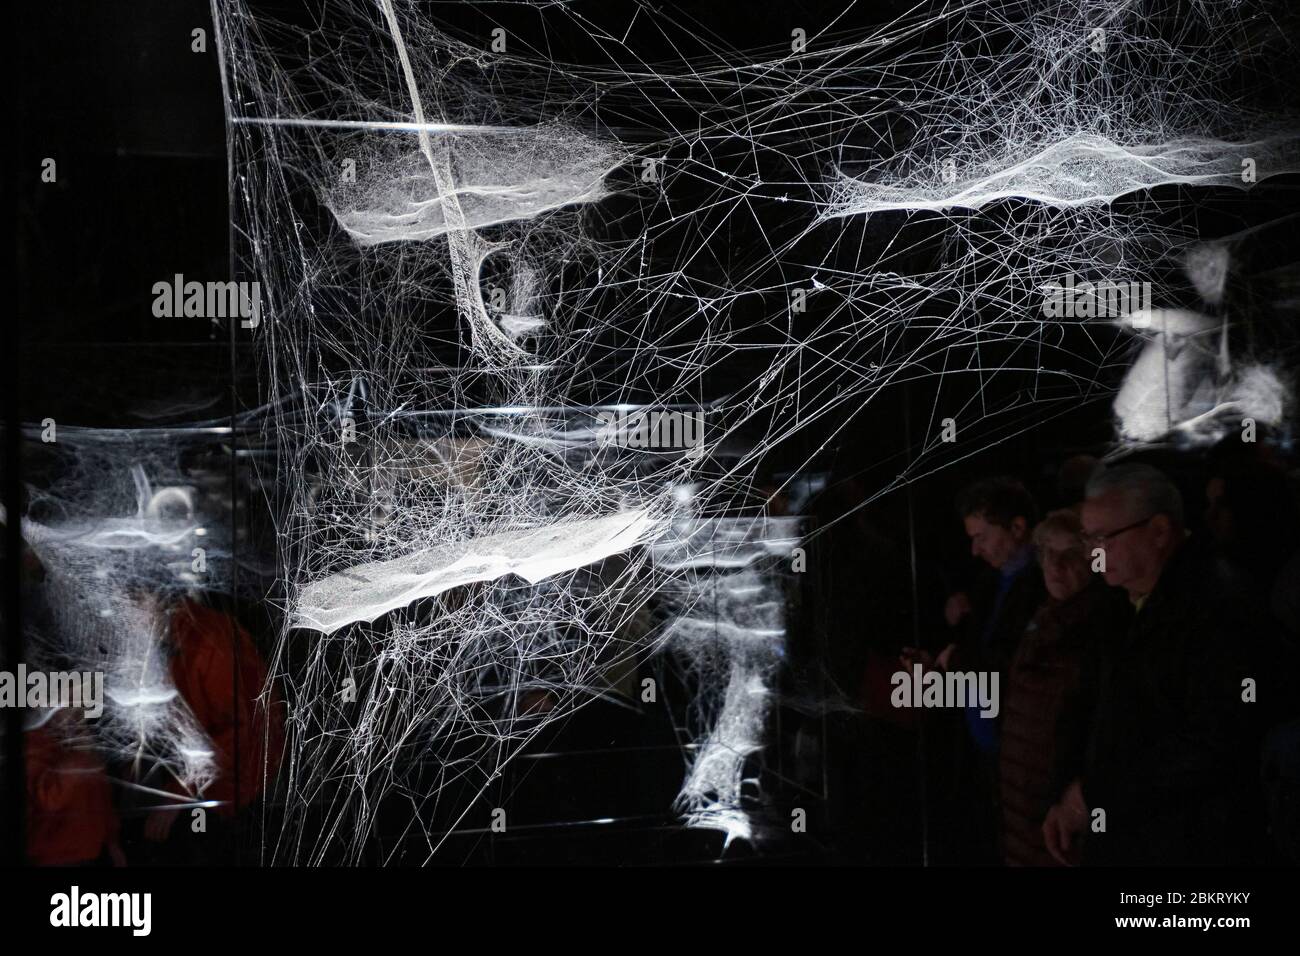 Frankreich, Paris, Palais de Tokyo, On Air Ausstellung des Künstlers Tomas Saraceno, Spinnennetze bilden die Arbeit Netze von AT-Zelt (s) Ion Stockfoto